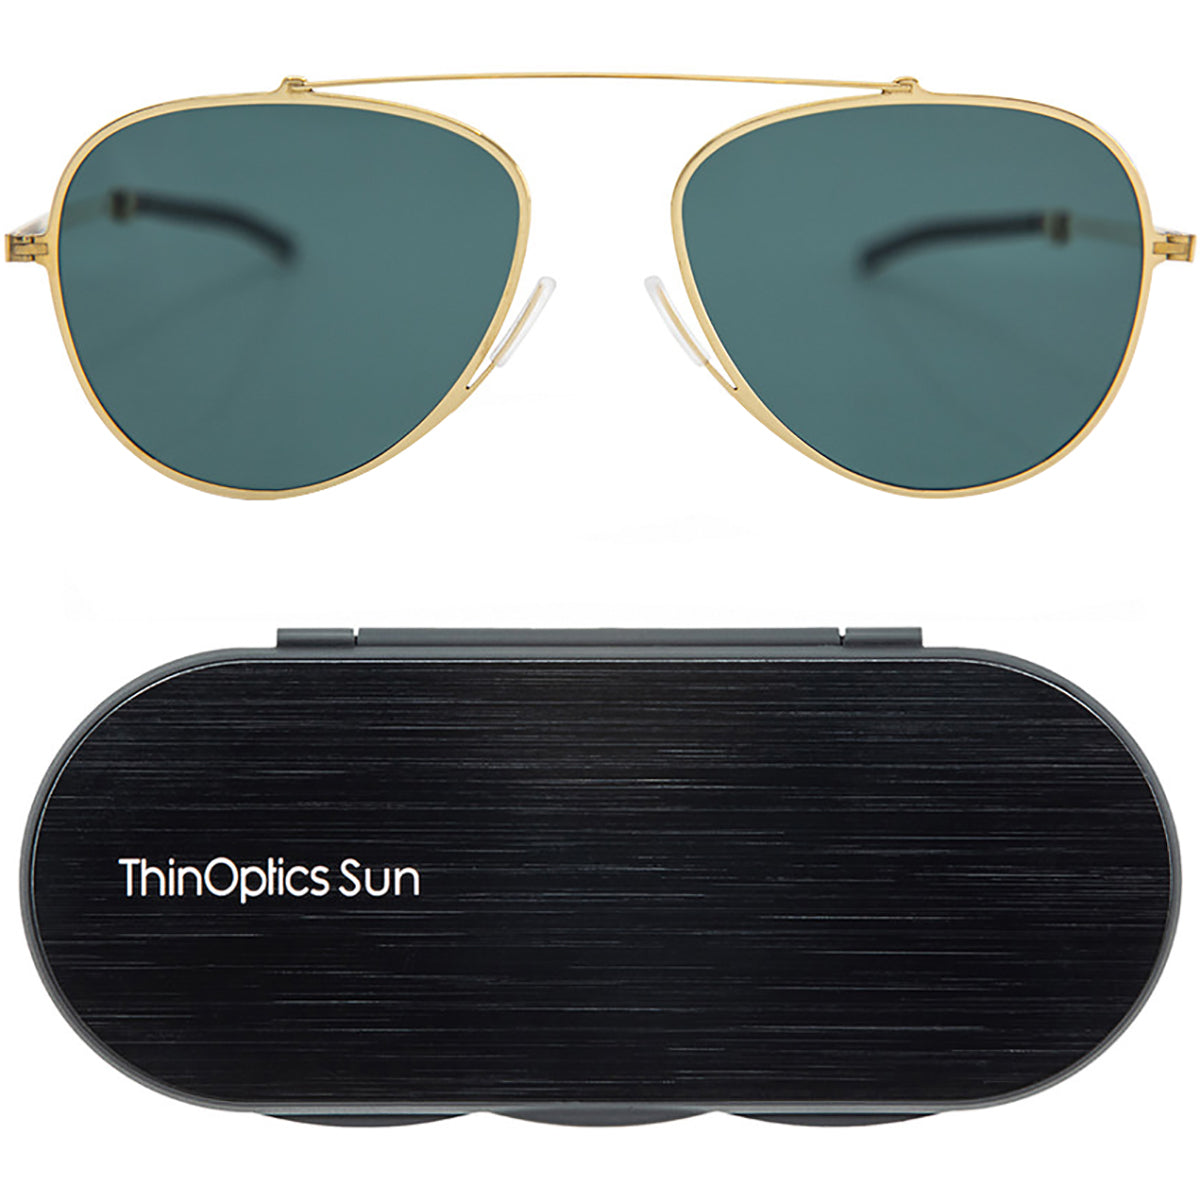 ThinOptics Mountain View Aviator Sunglasses with Aluminum Case ThinOptics